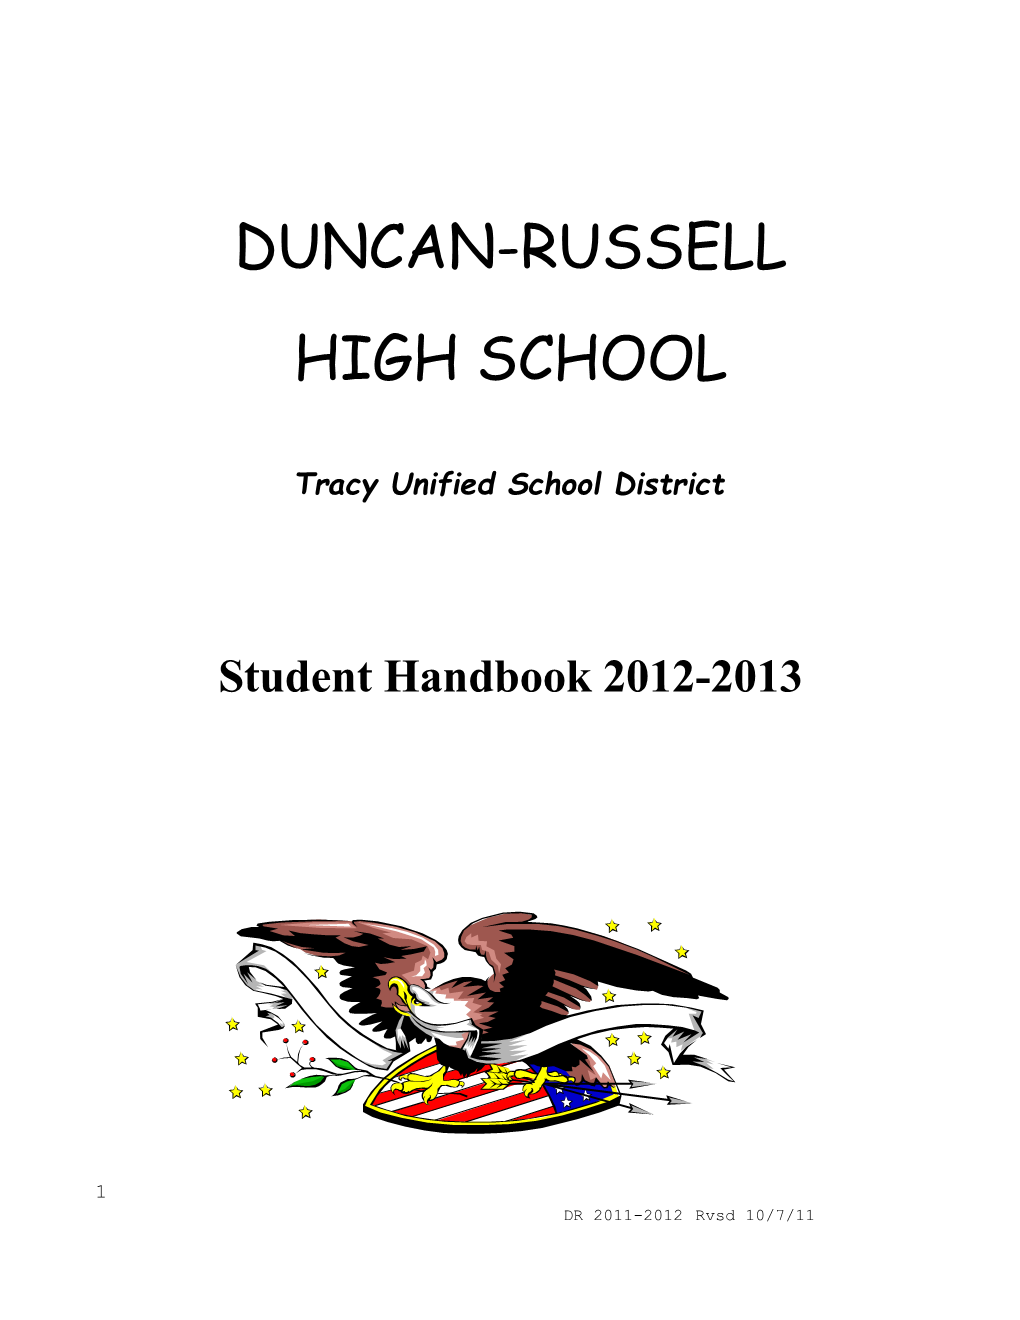 Duncan-Russell High School Staff